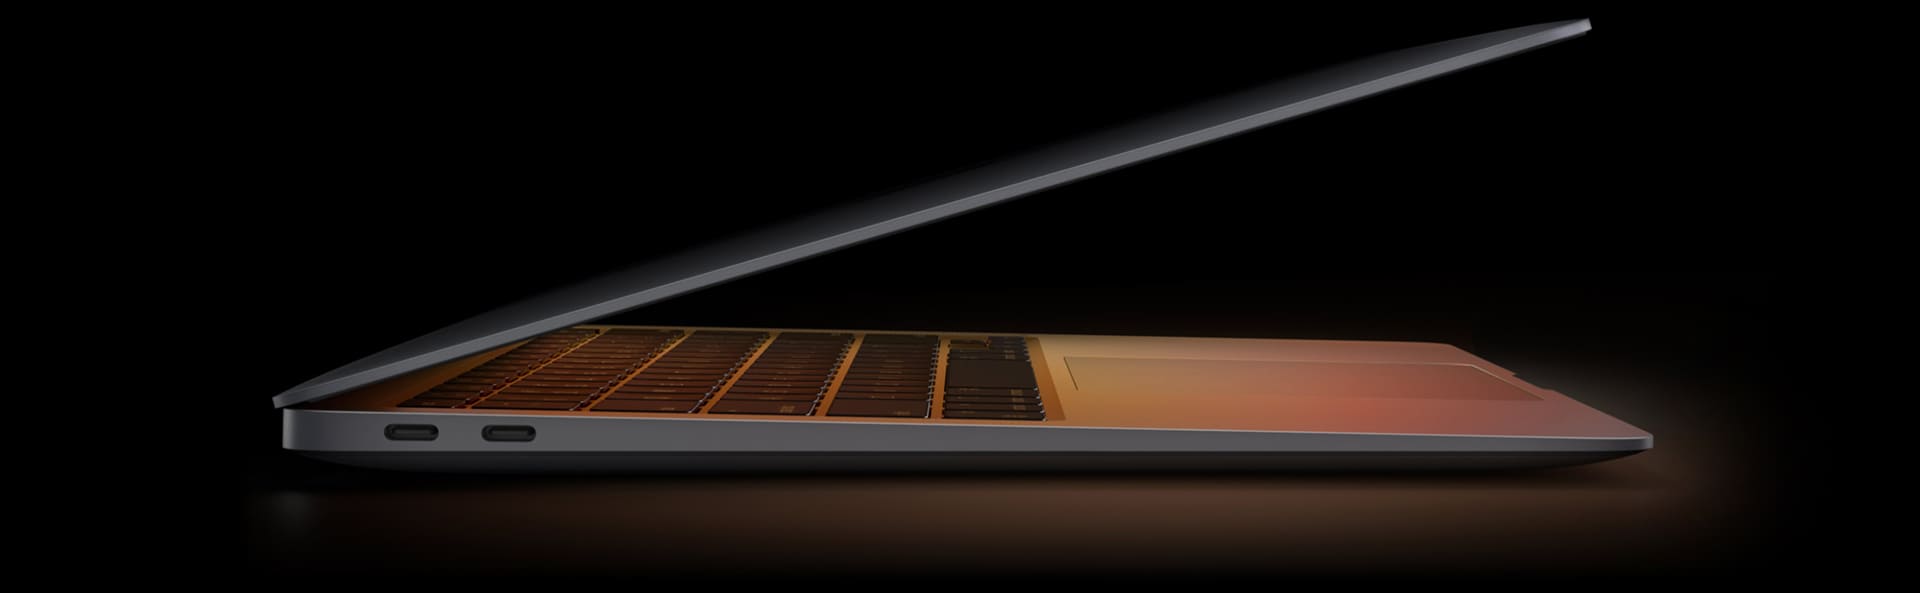 MacBook Air με M1 chip